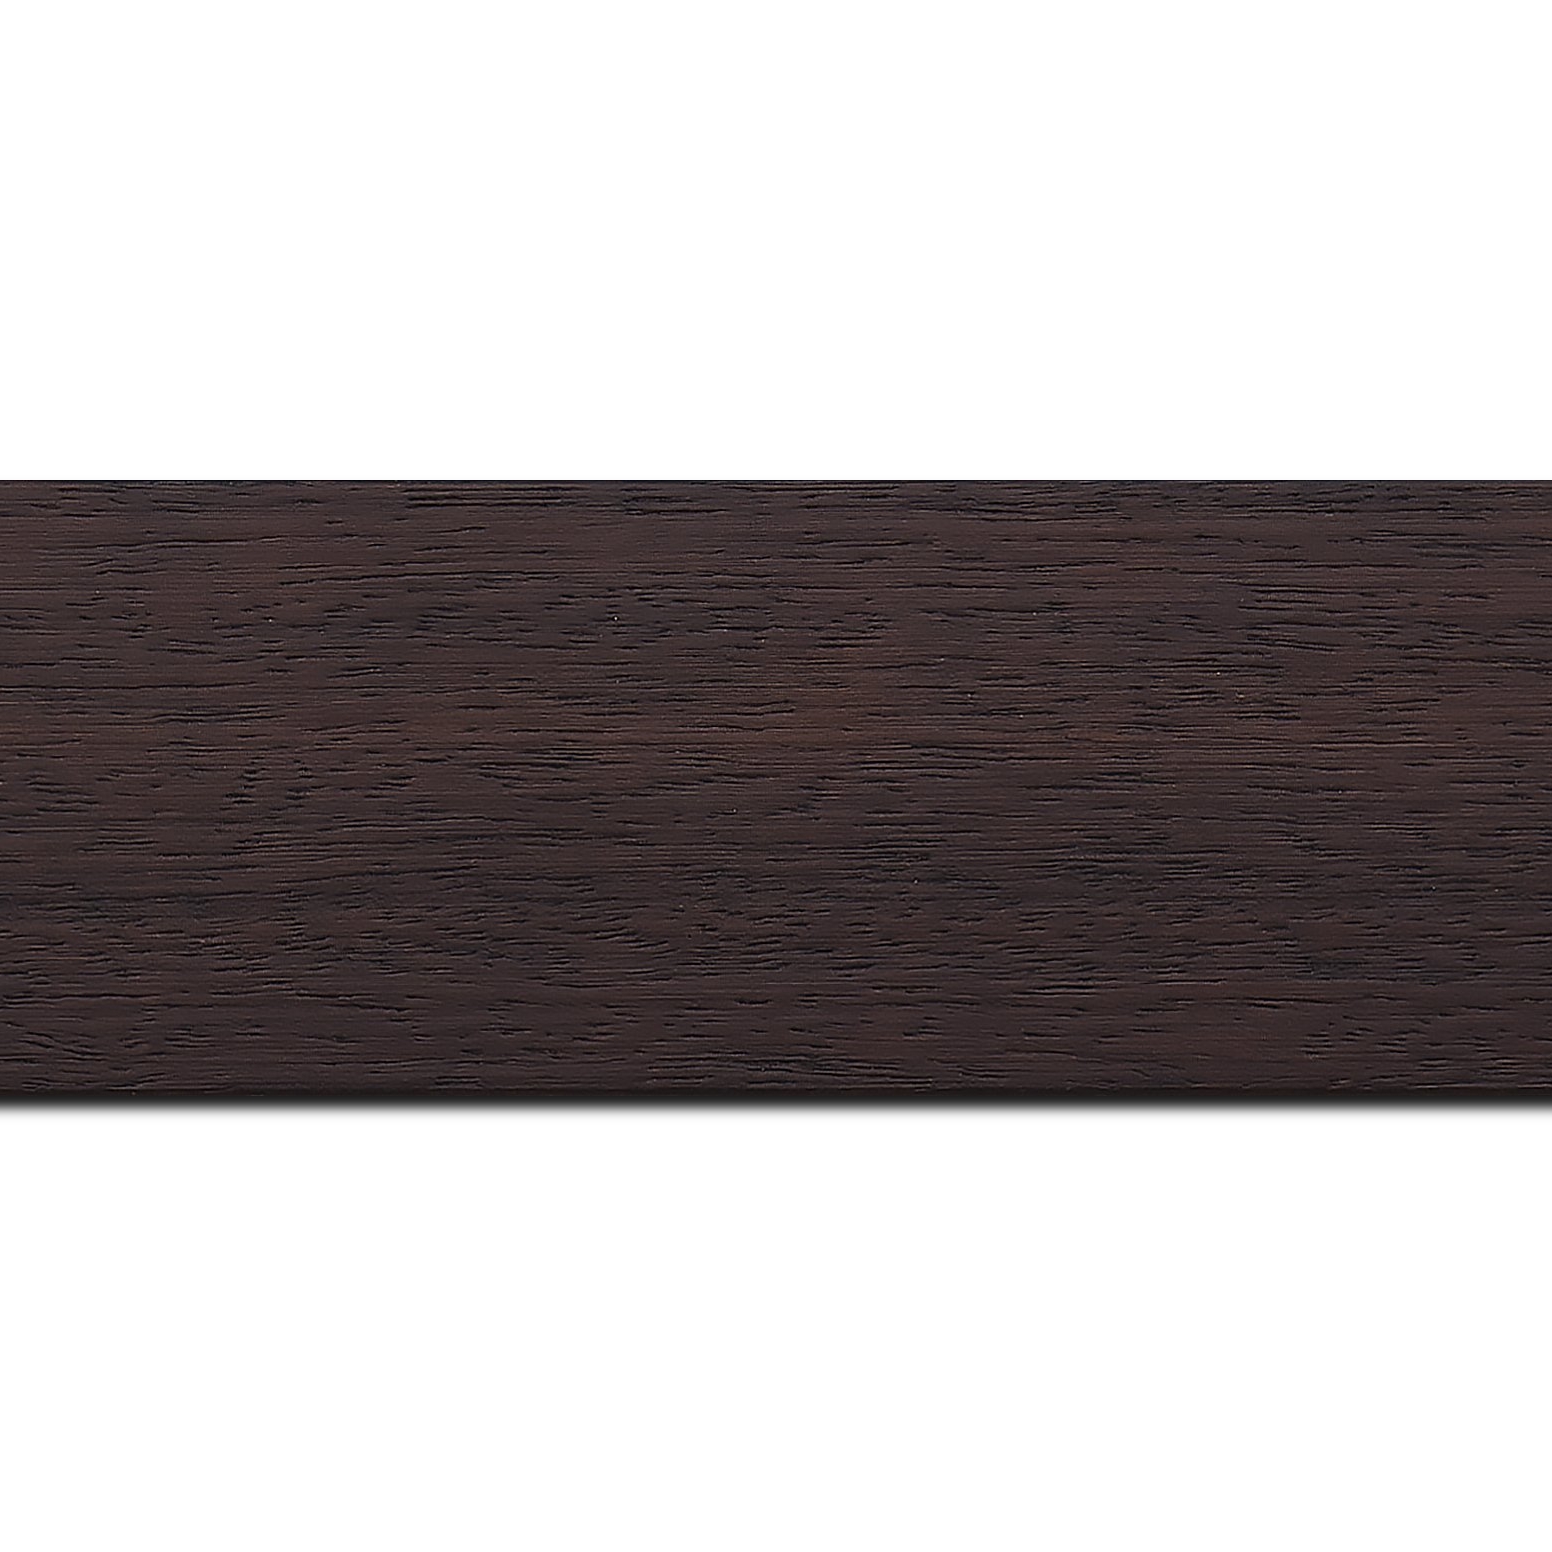 Pack par 12m, bois profil plat largeur 5.9cm couleur marron foncé satiné (longueur baguette pouvant varier entre 2.40m et 3m selon arrivage des bois)